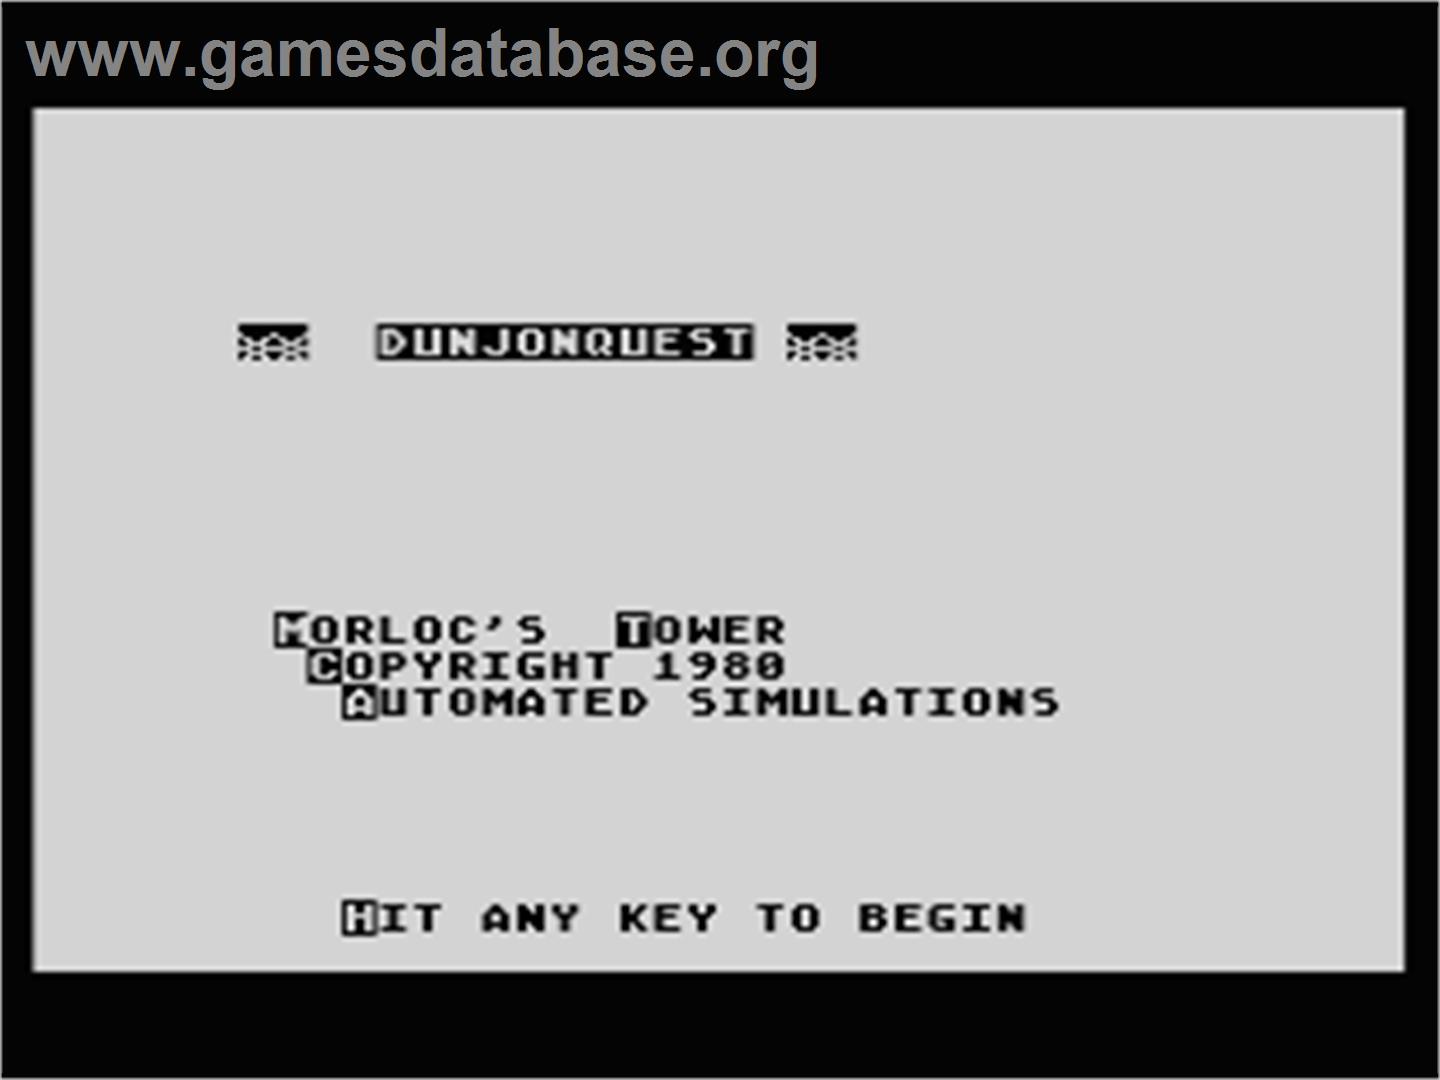 Dunjonquest: Morloc's Tower - Atari 8-bit - Artwork - Title Screen